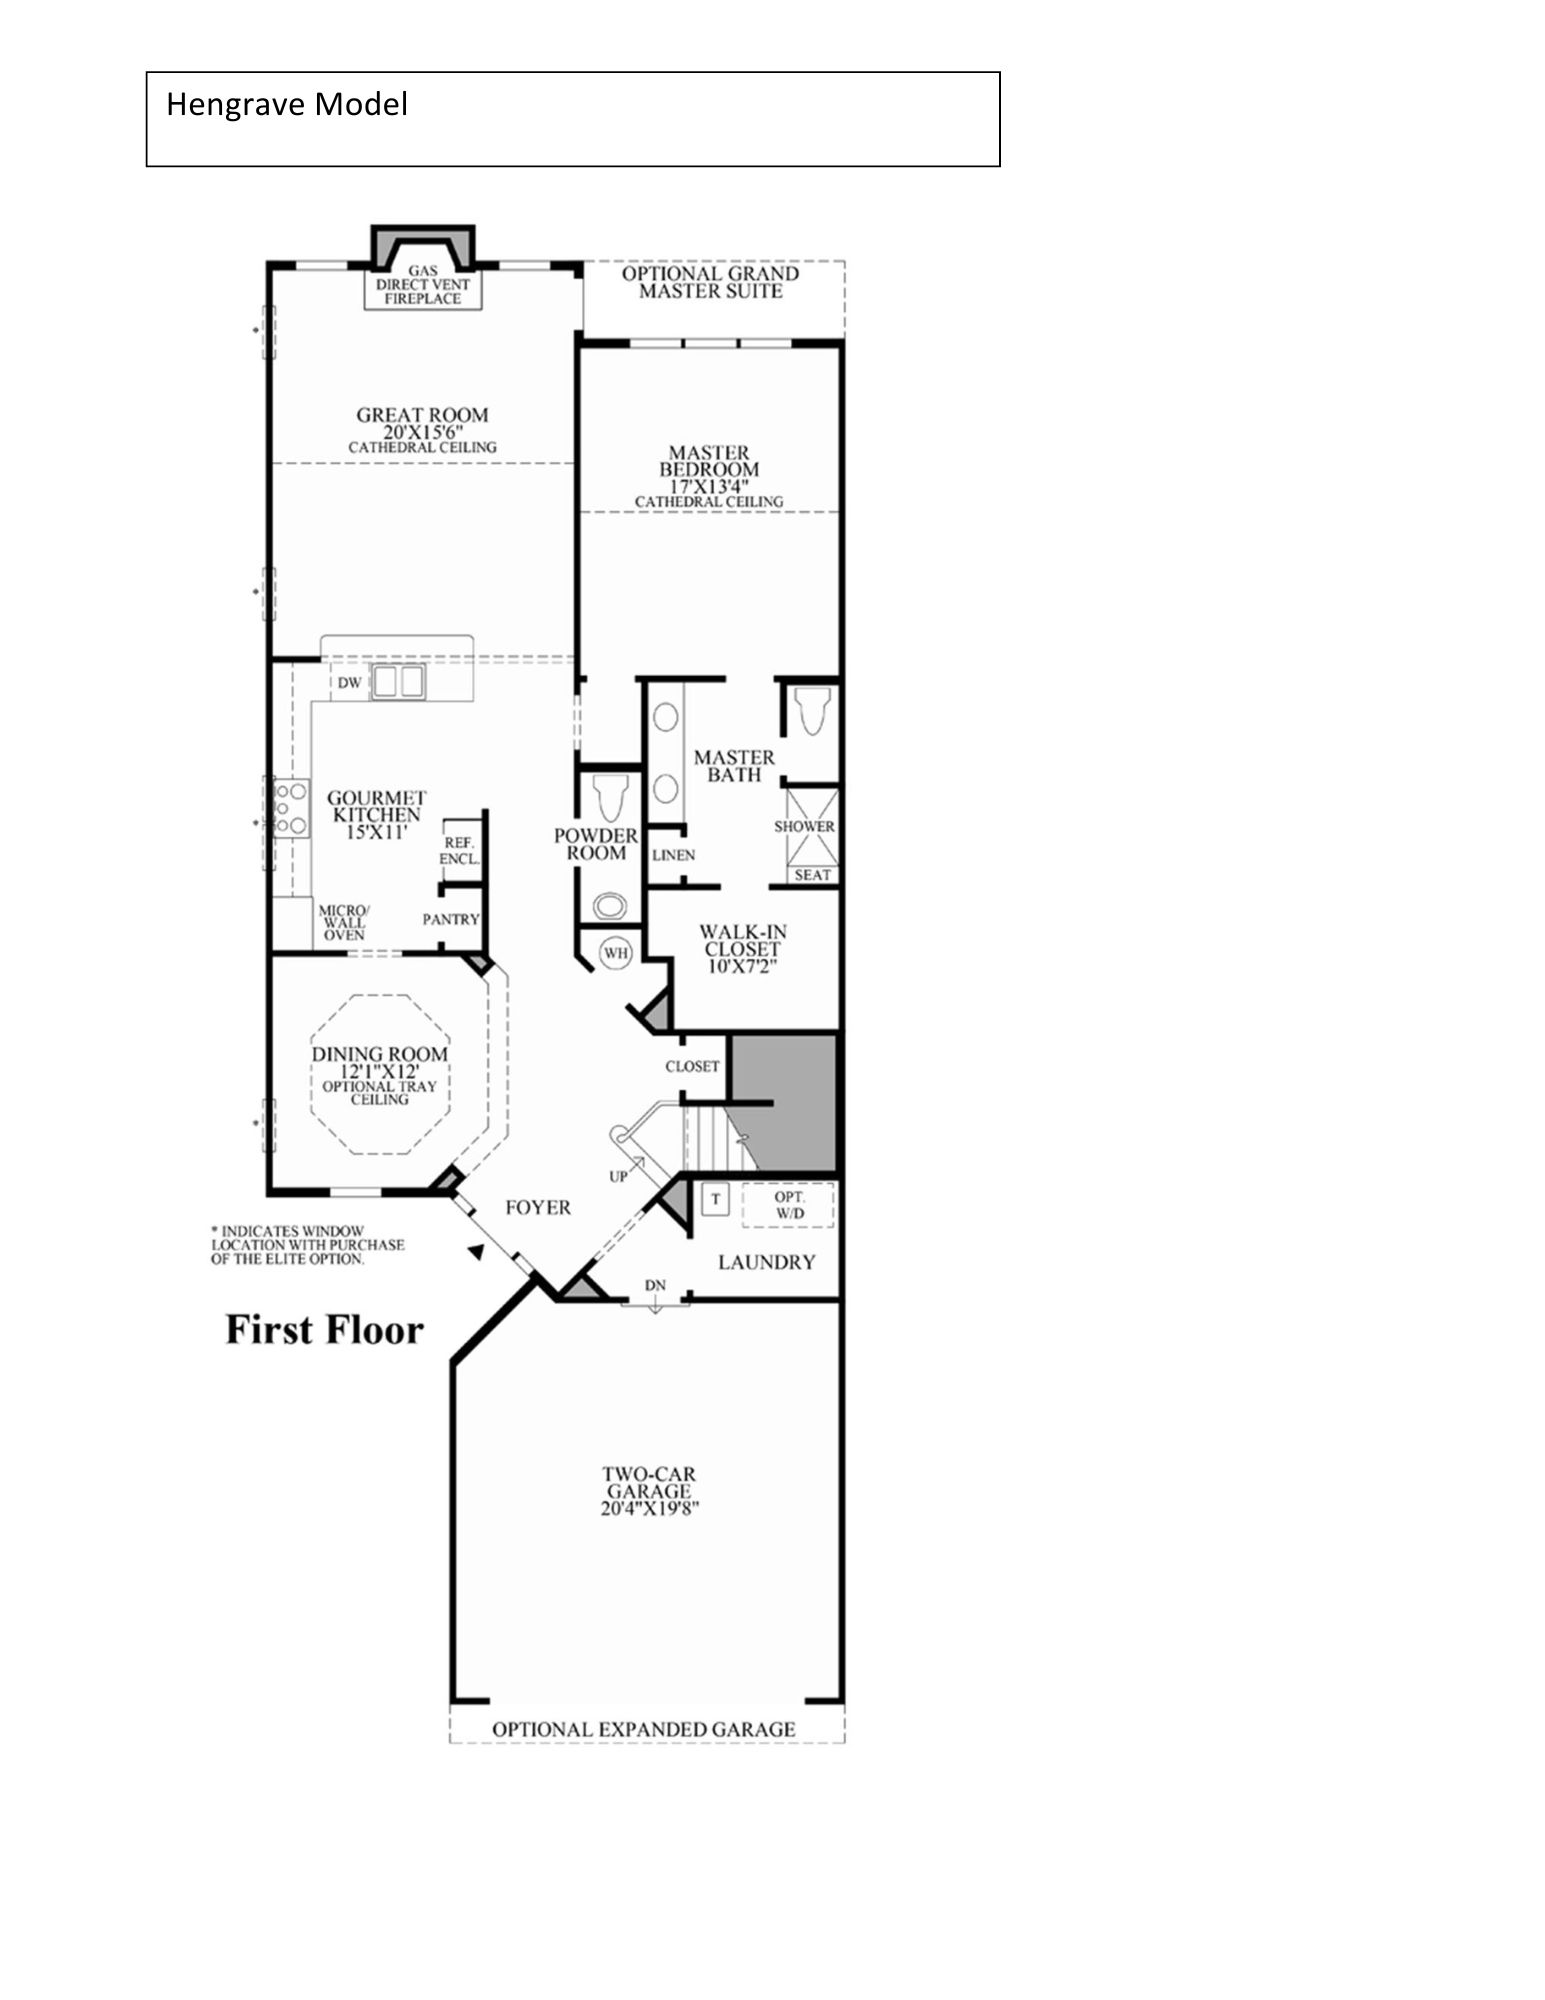 regency of yardley hengrave floor plan1